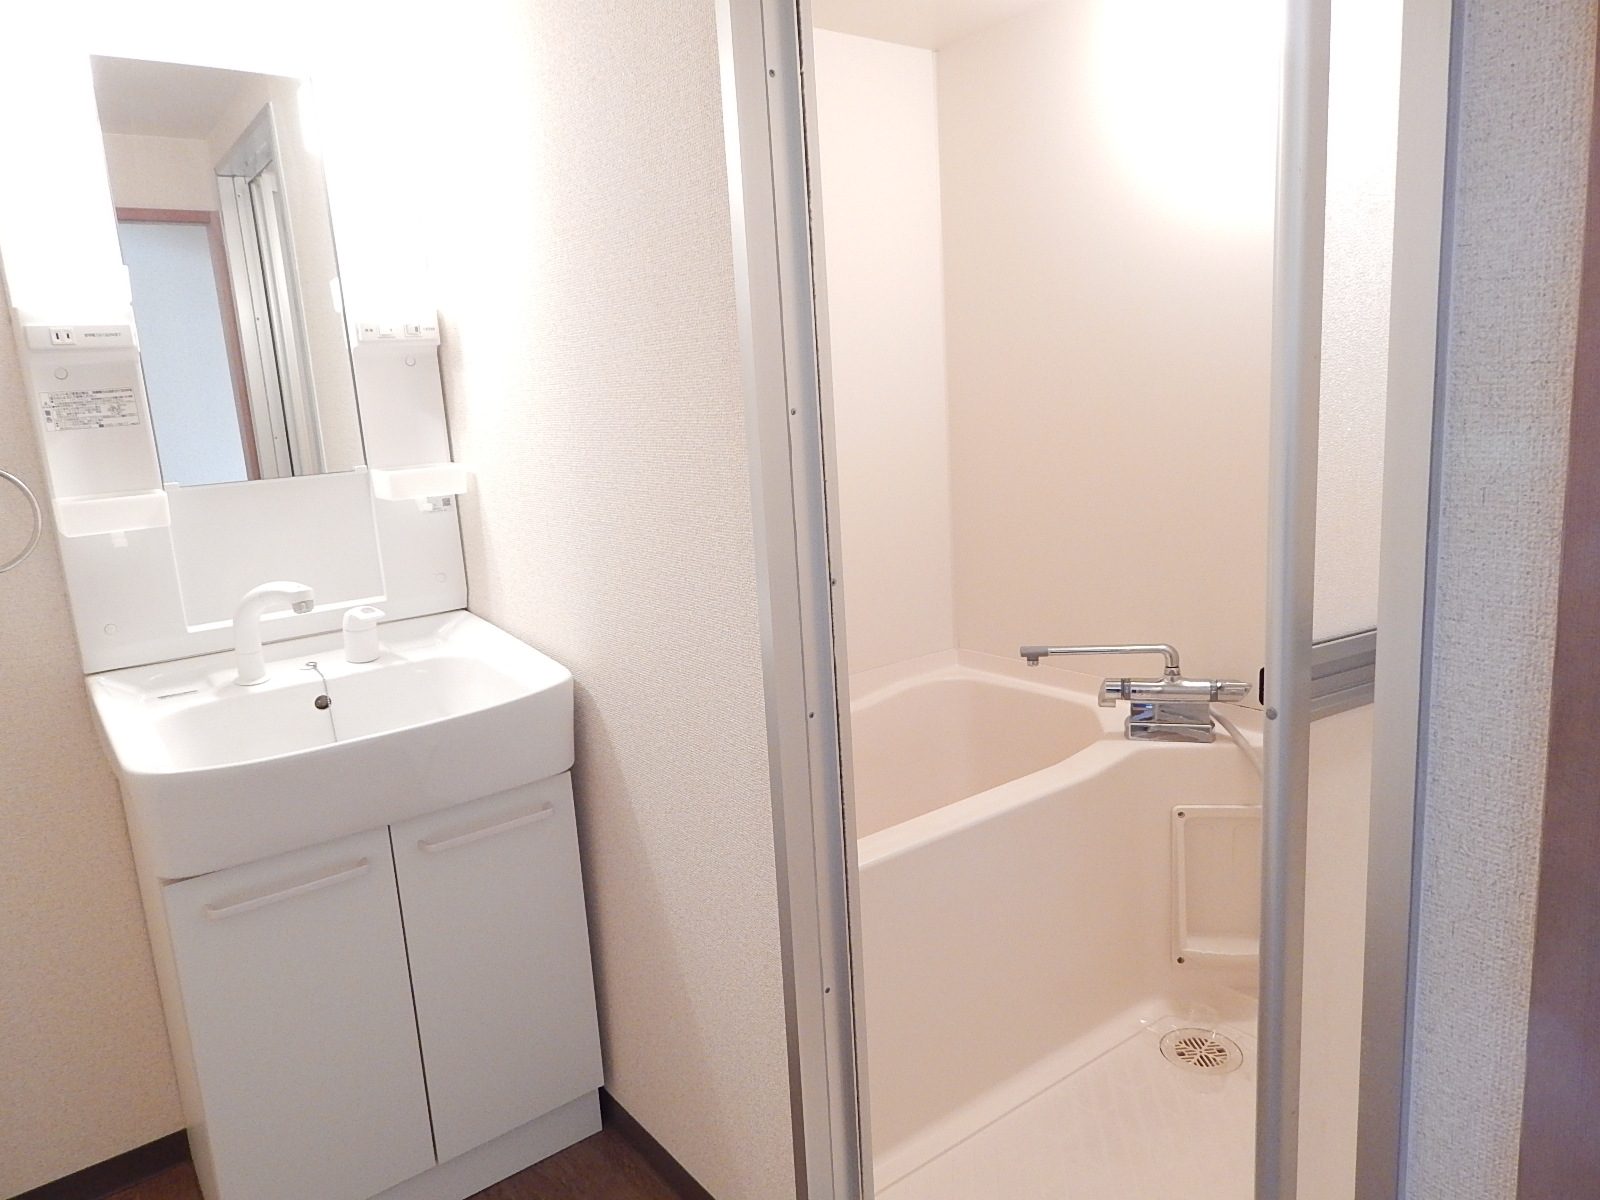 Washroom. It is vanity ☆